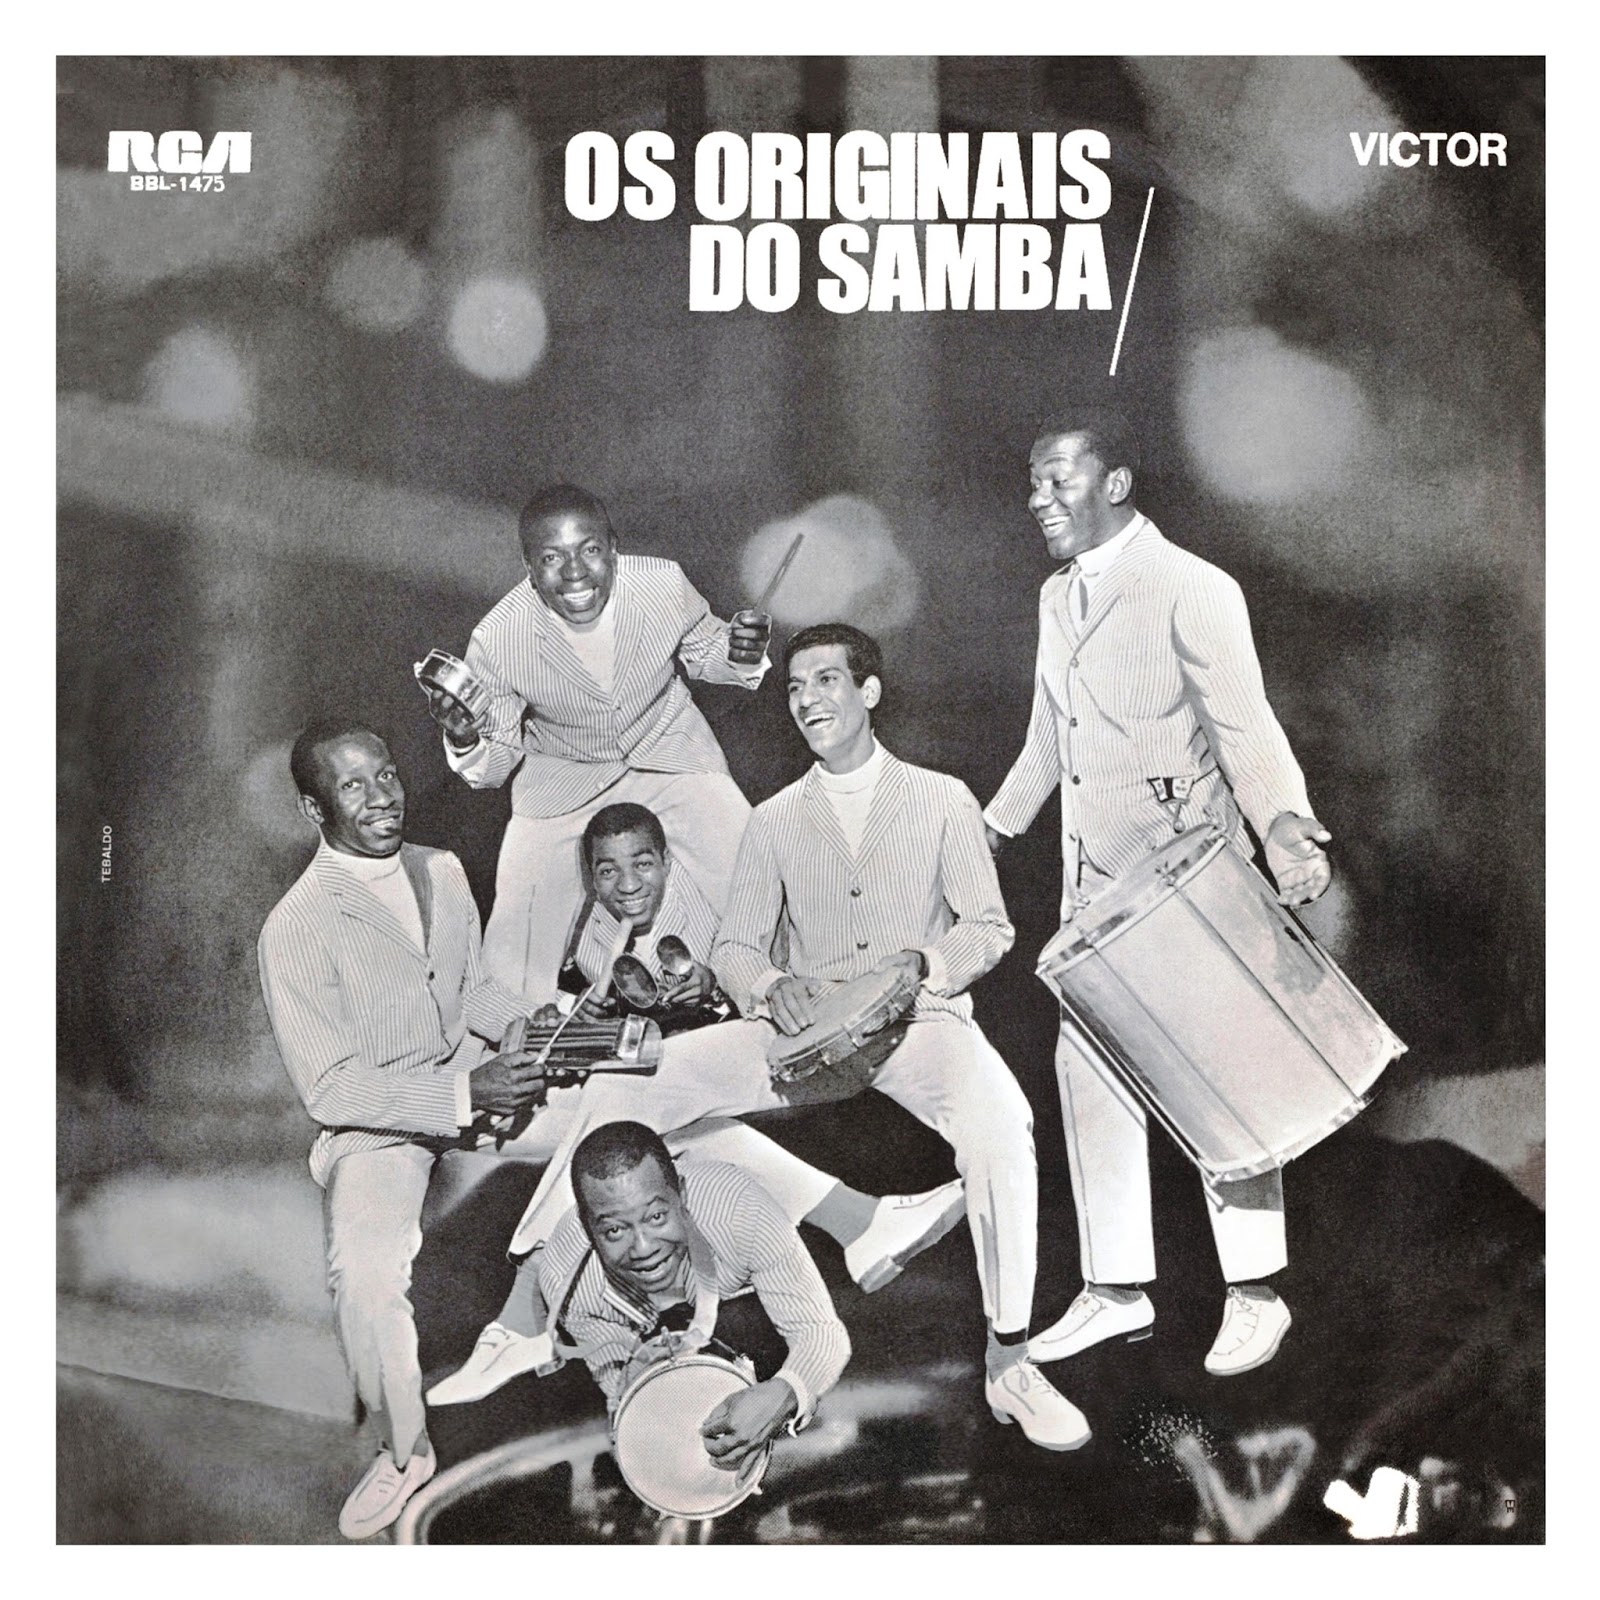 Lp Vinil - Os Originais Do Samba - Sangue Suor e Samba